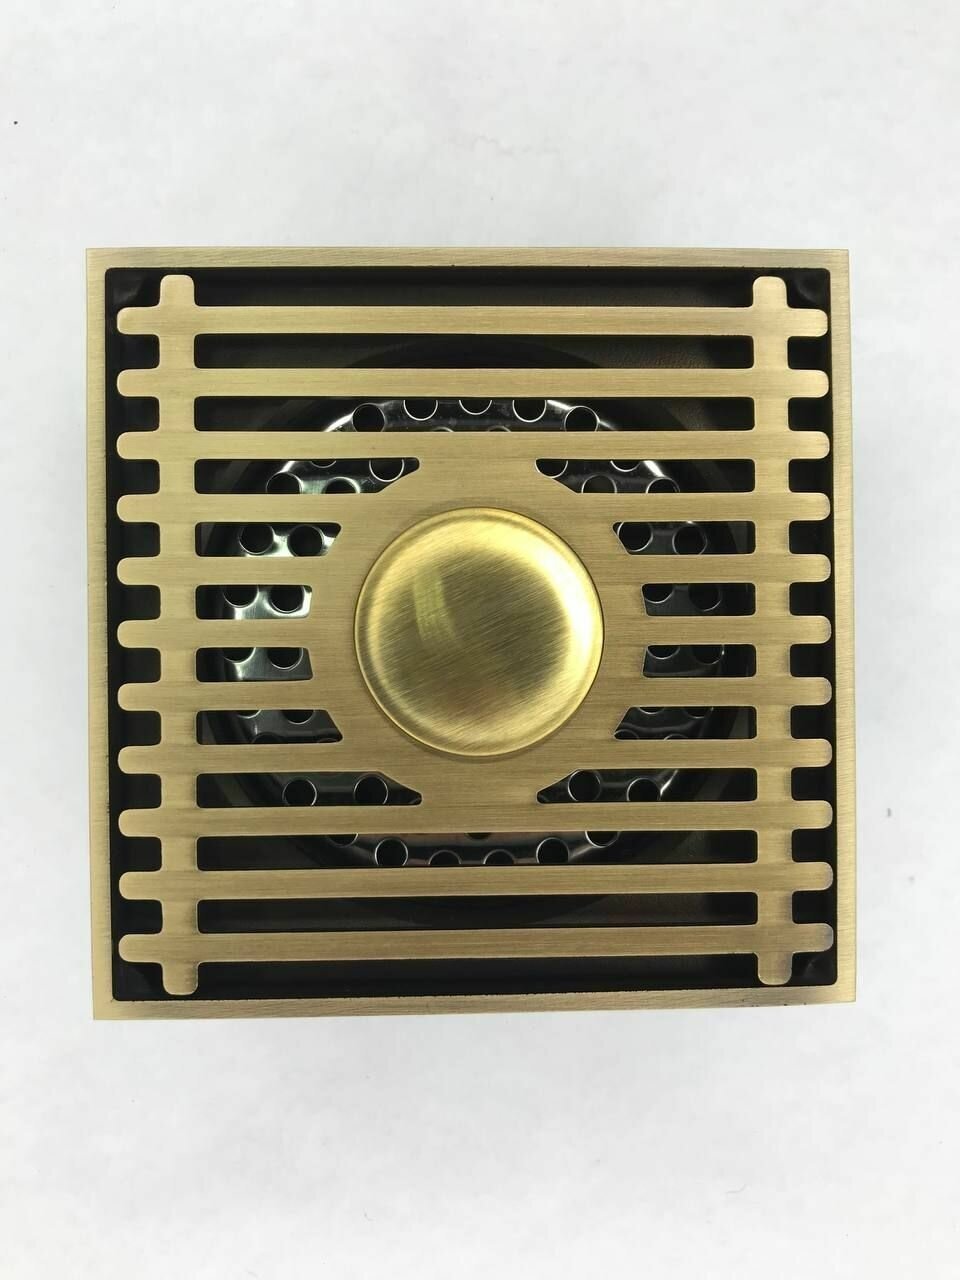 Трап душевой с обратным клапаном (сухой затвор) 100*100мм решетка из нержавеющей стали и латуни прямой цвет бронзовый